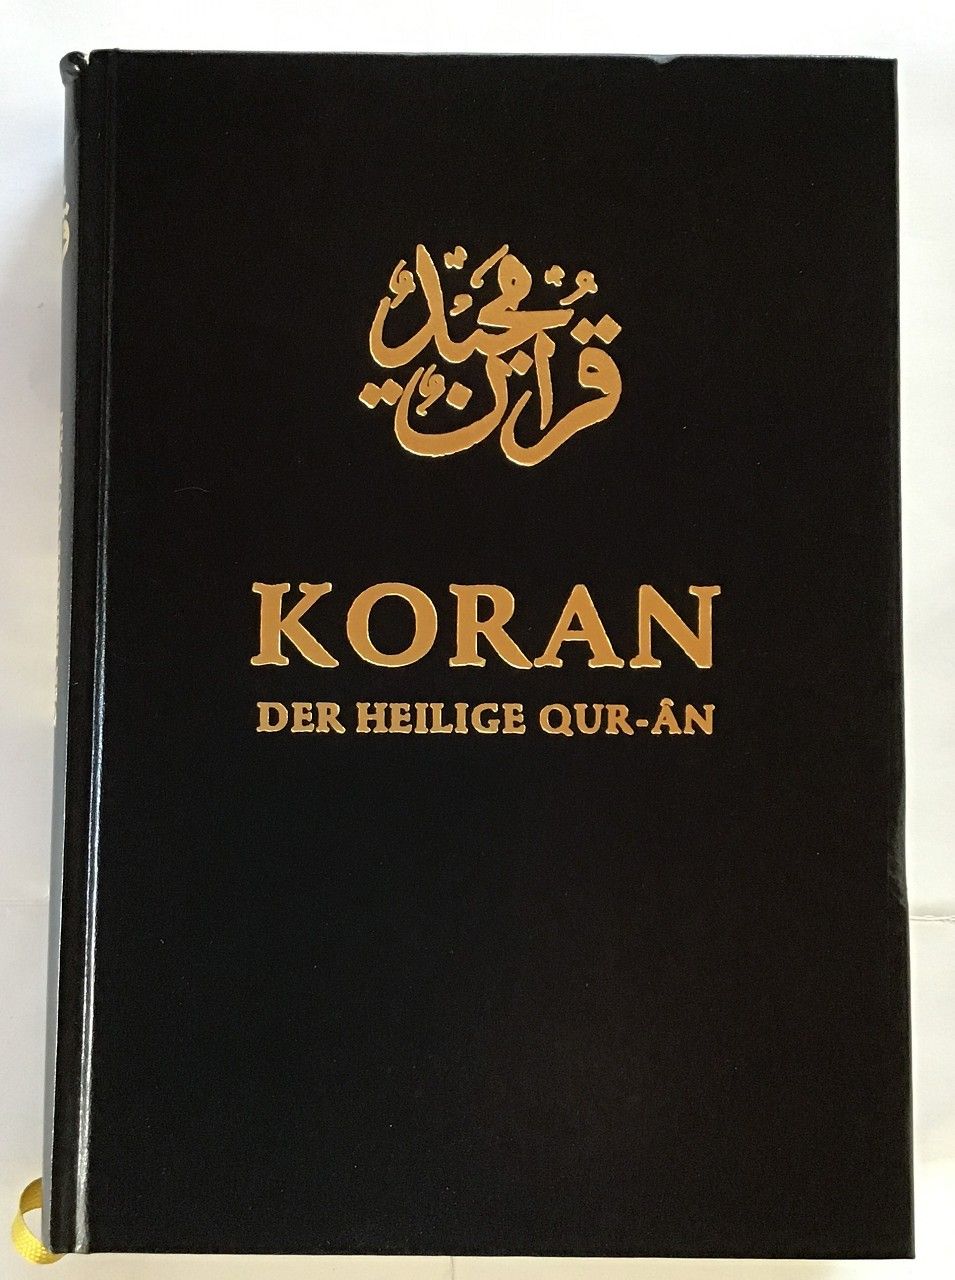 Koran : Der heilige Qur-An, Arabisch und deutsch. Ahmadiyya Muslim Jamaat in der Bundesrepublik Deutschland und der Schweiz. Hrsg. unter der Leitung von Hadhrat Mirza Masroor Ahmad - Ahmad, Masroor